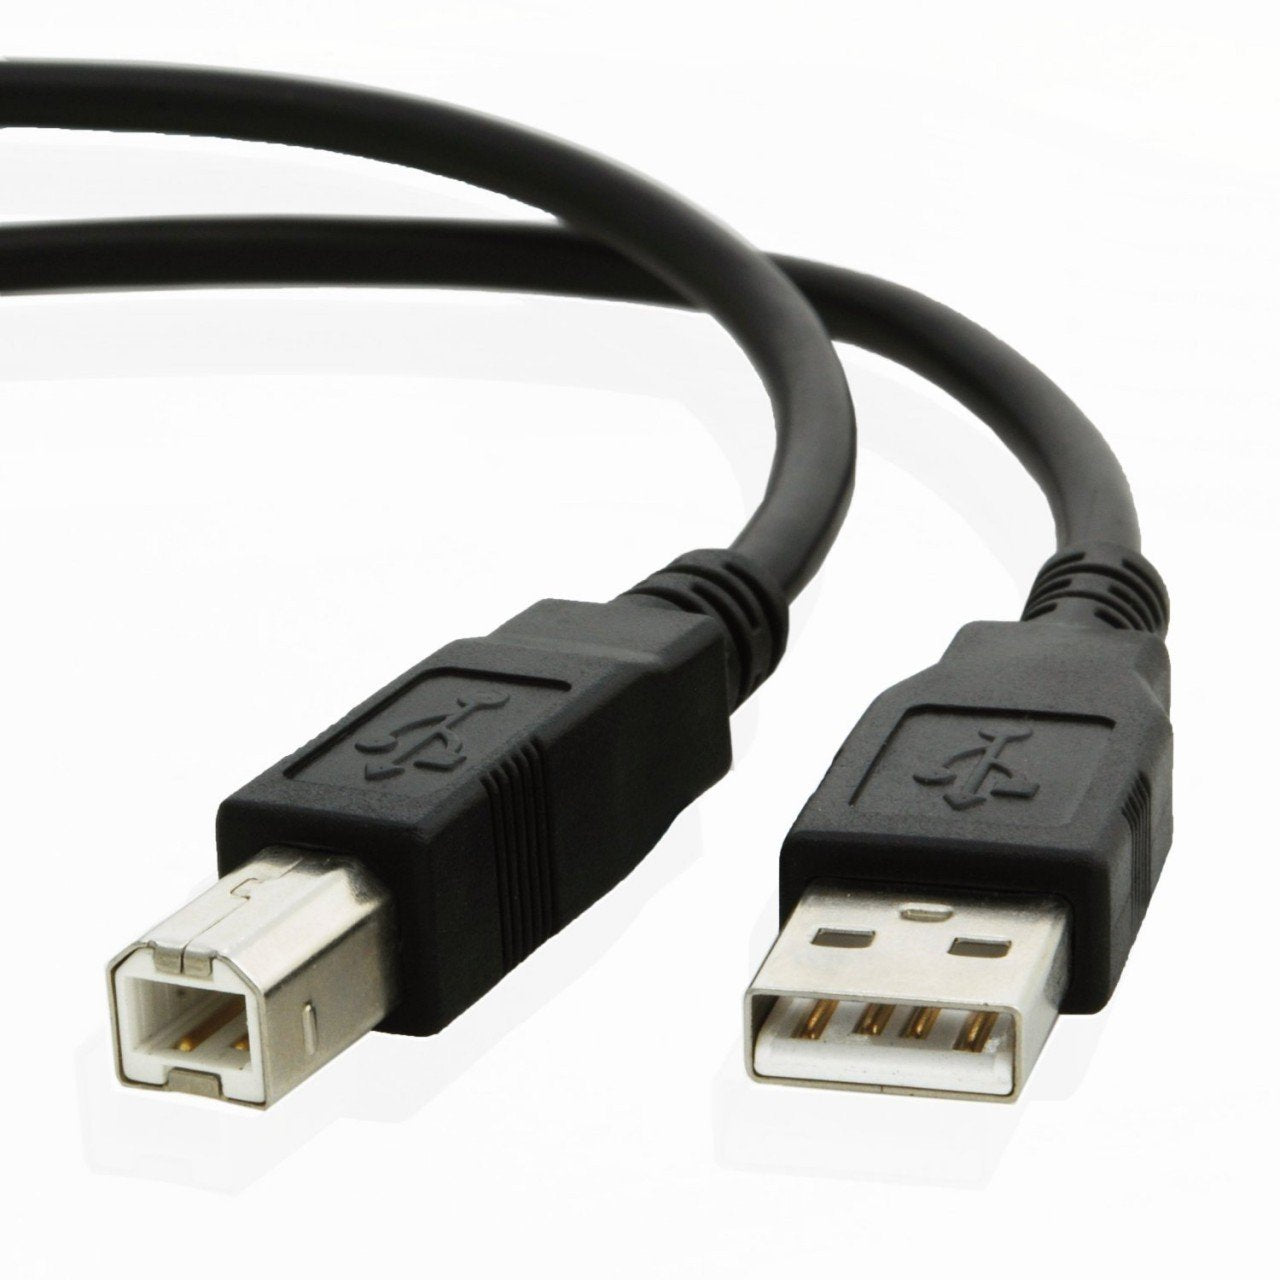 USB cable for Hp LASERJET ENTERPRISE M653x